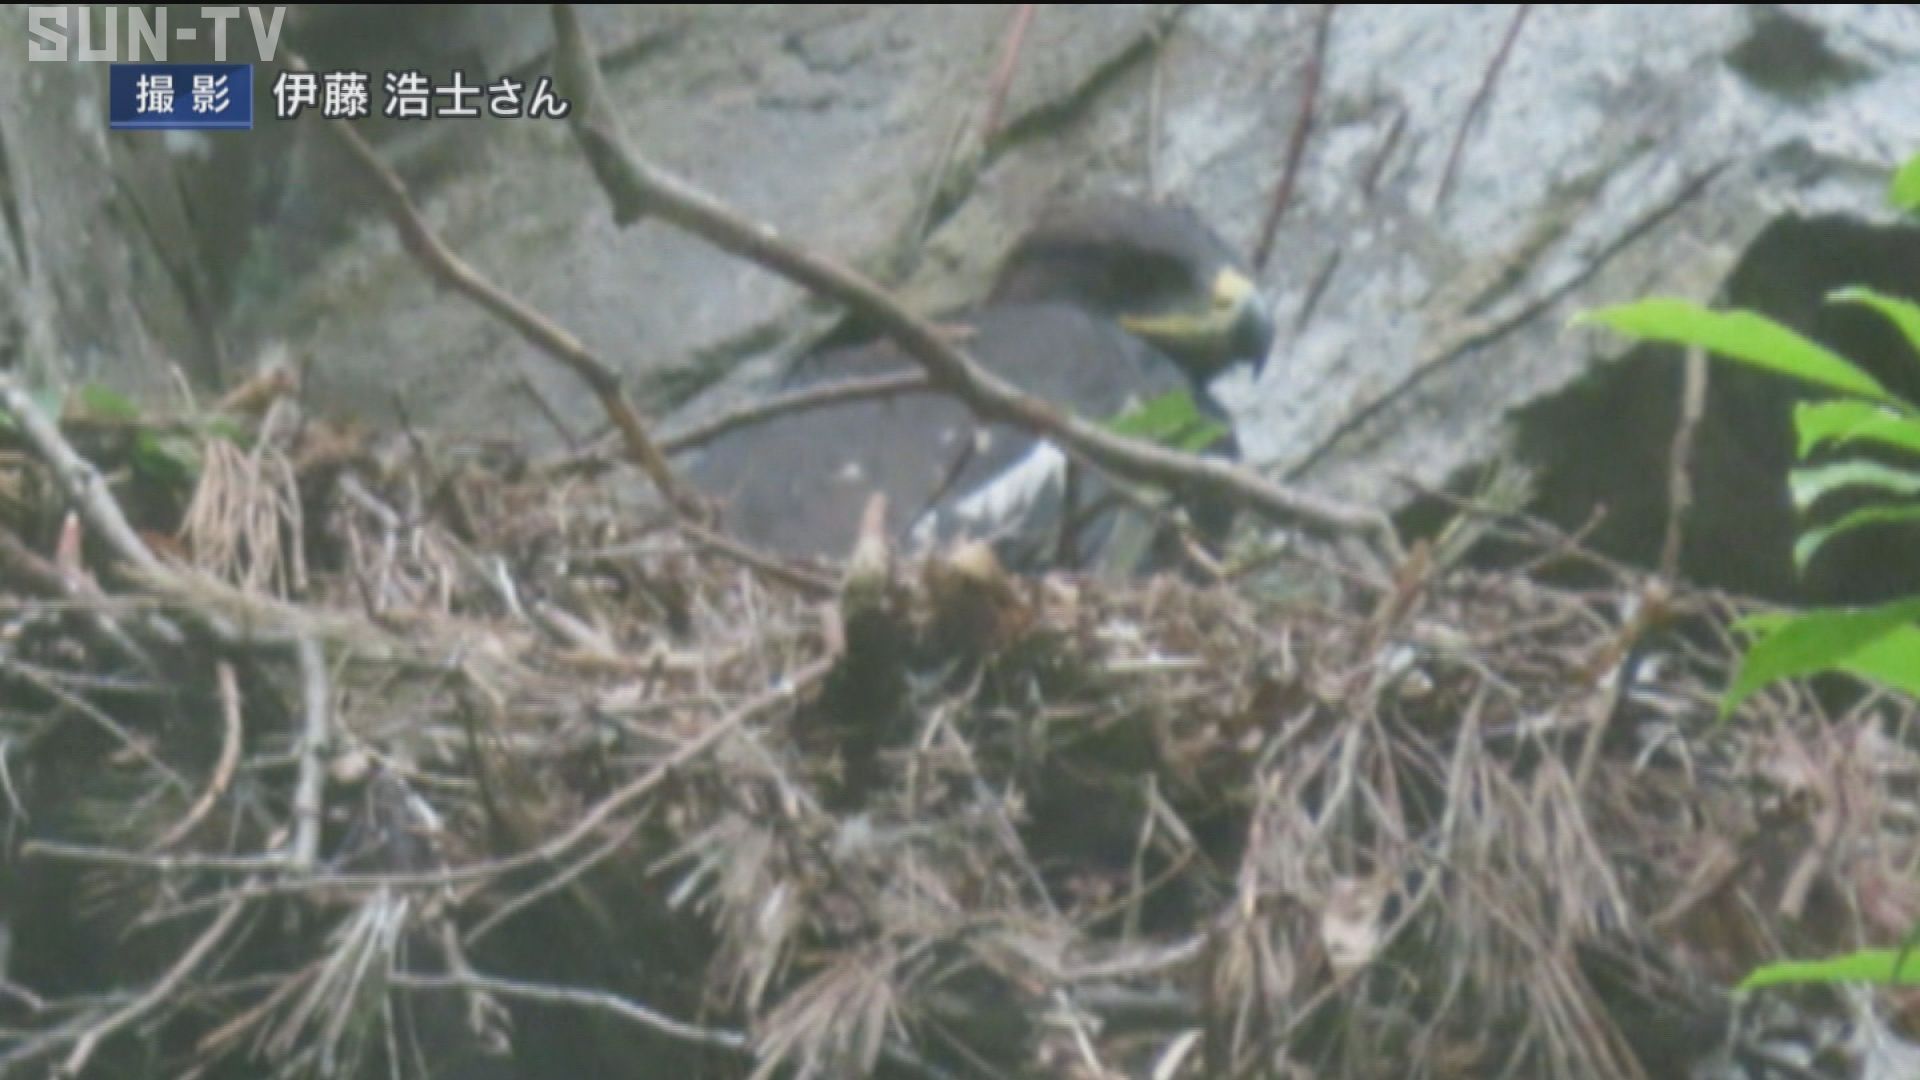 絶滅危惧種 ニホンイヌワシの繁殖を確認 兵庫県内では16年ぶり サンテレビニュース